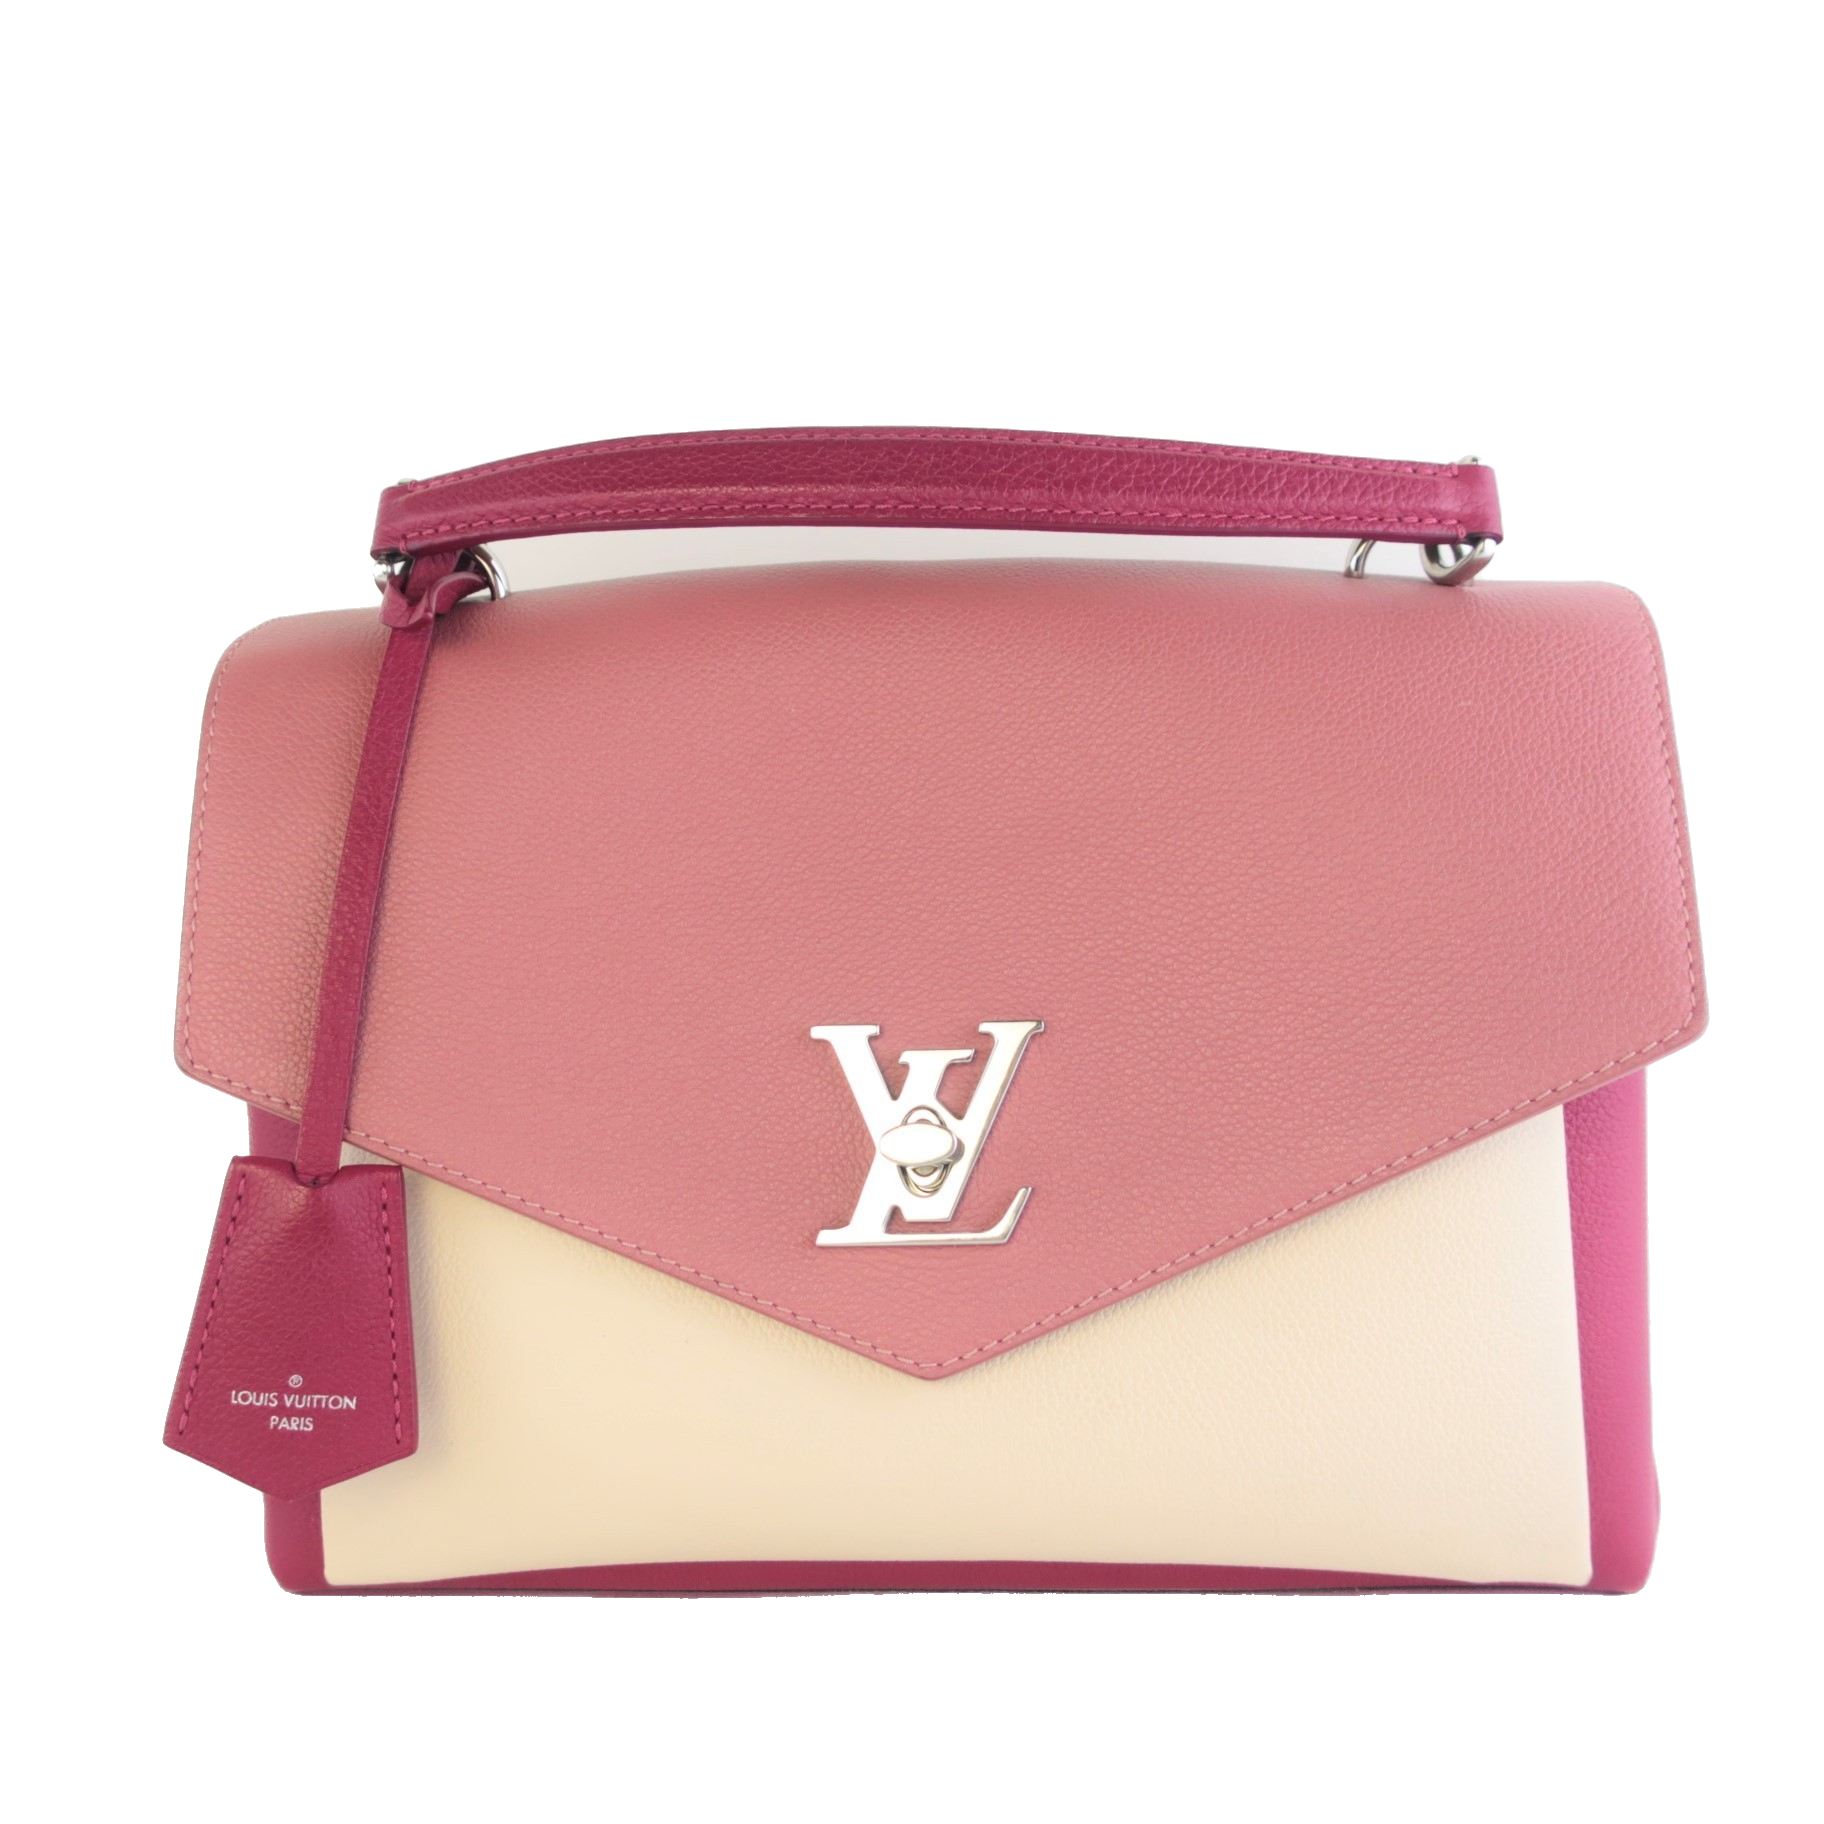 Spring-estate 2021 Bag Trends: come rimanere shopping alla moda Louis Vuitton mylockme borse